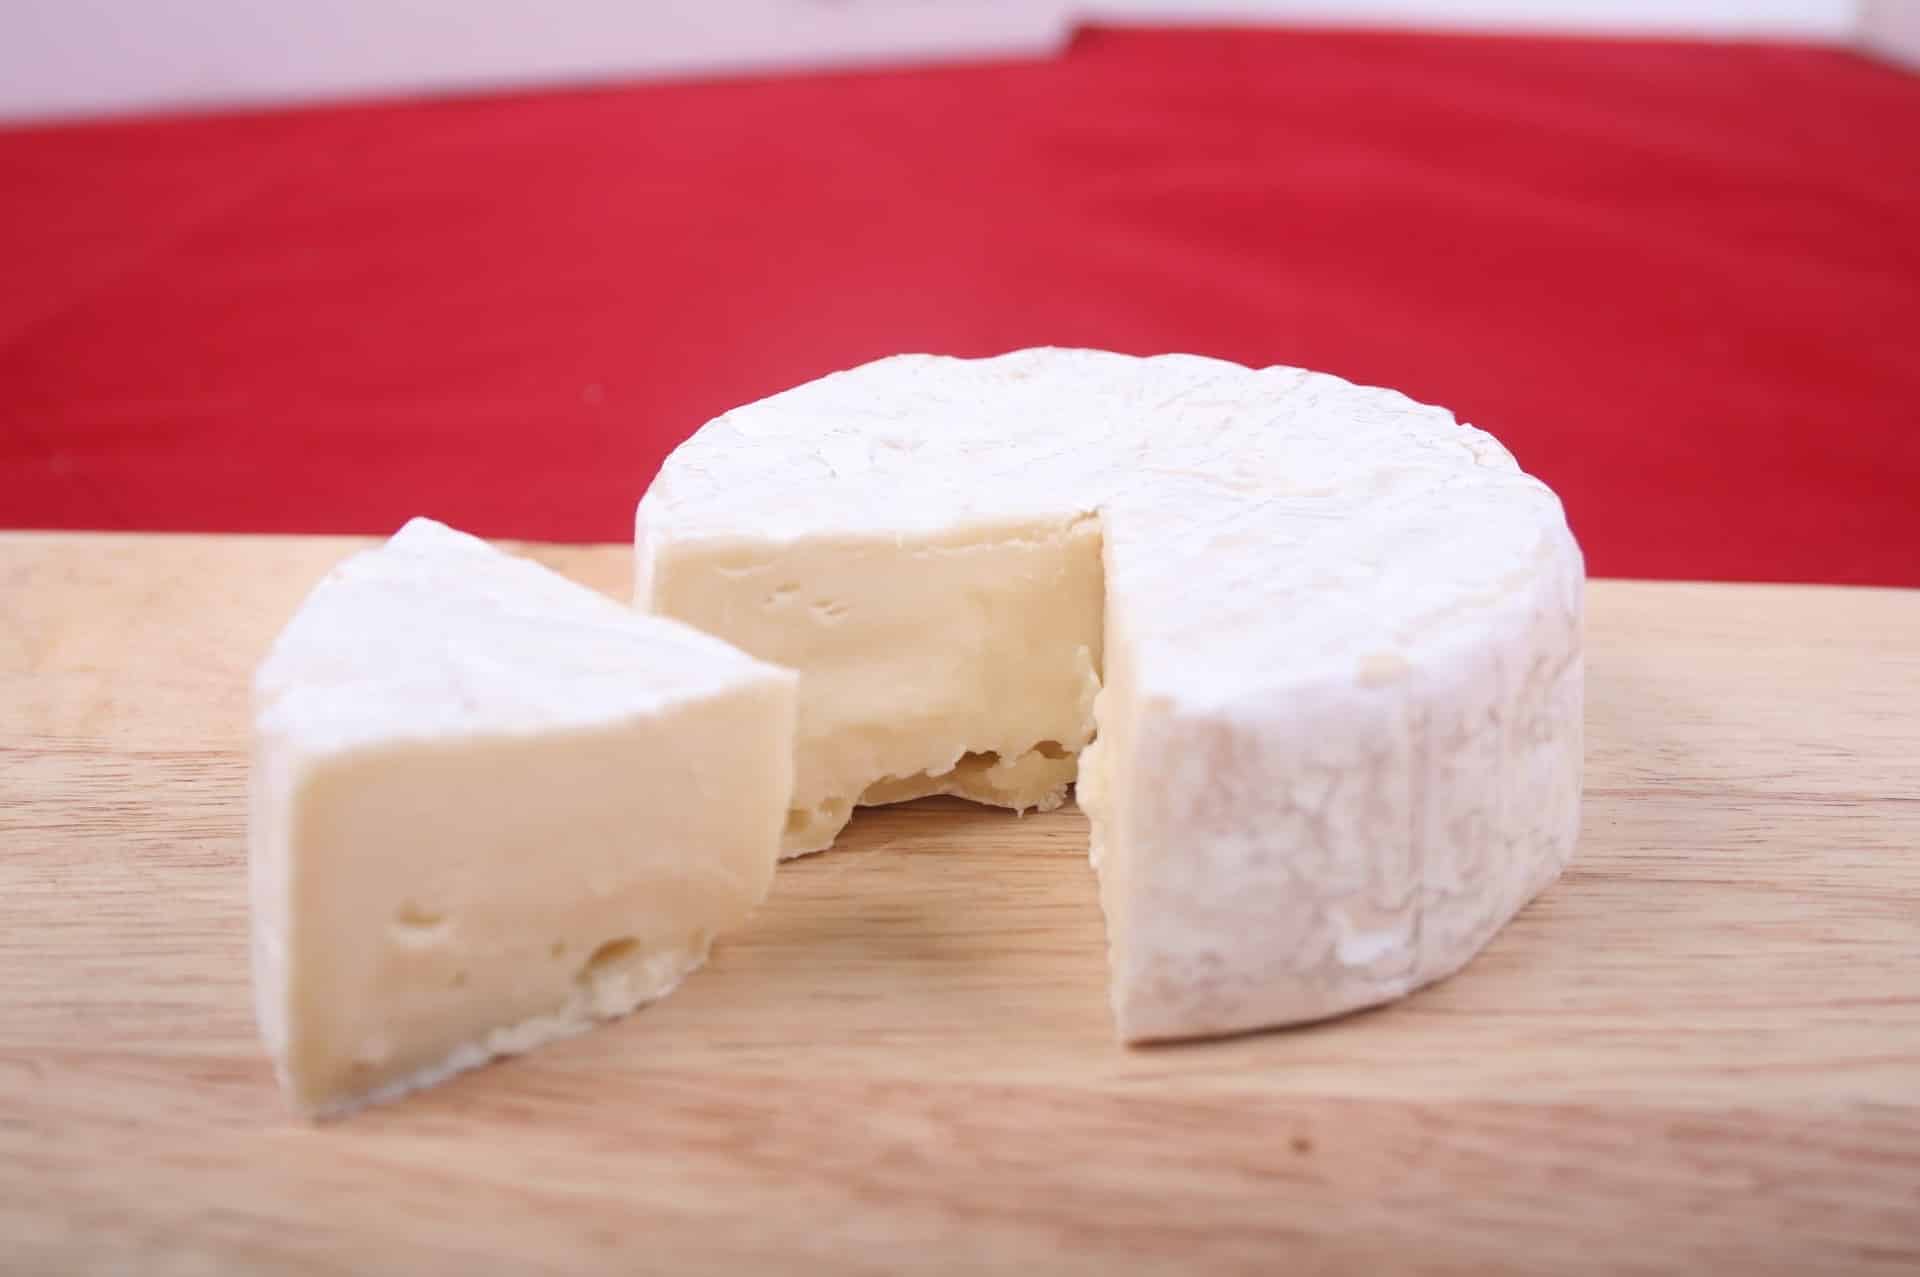 Odborníci varují před sýry z Lidlu, mohou obsahovat nebezpečnou bakterii